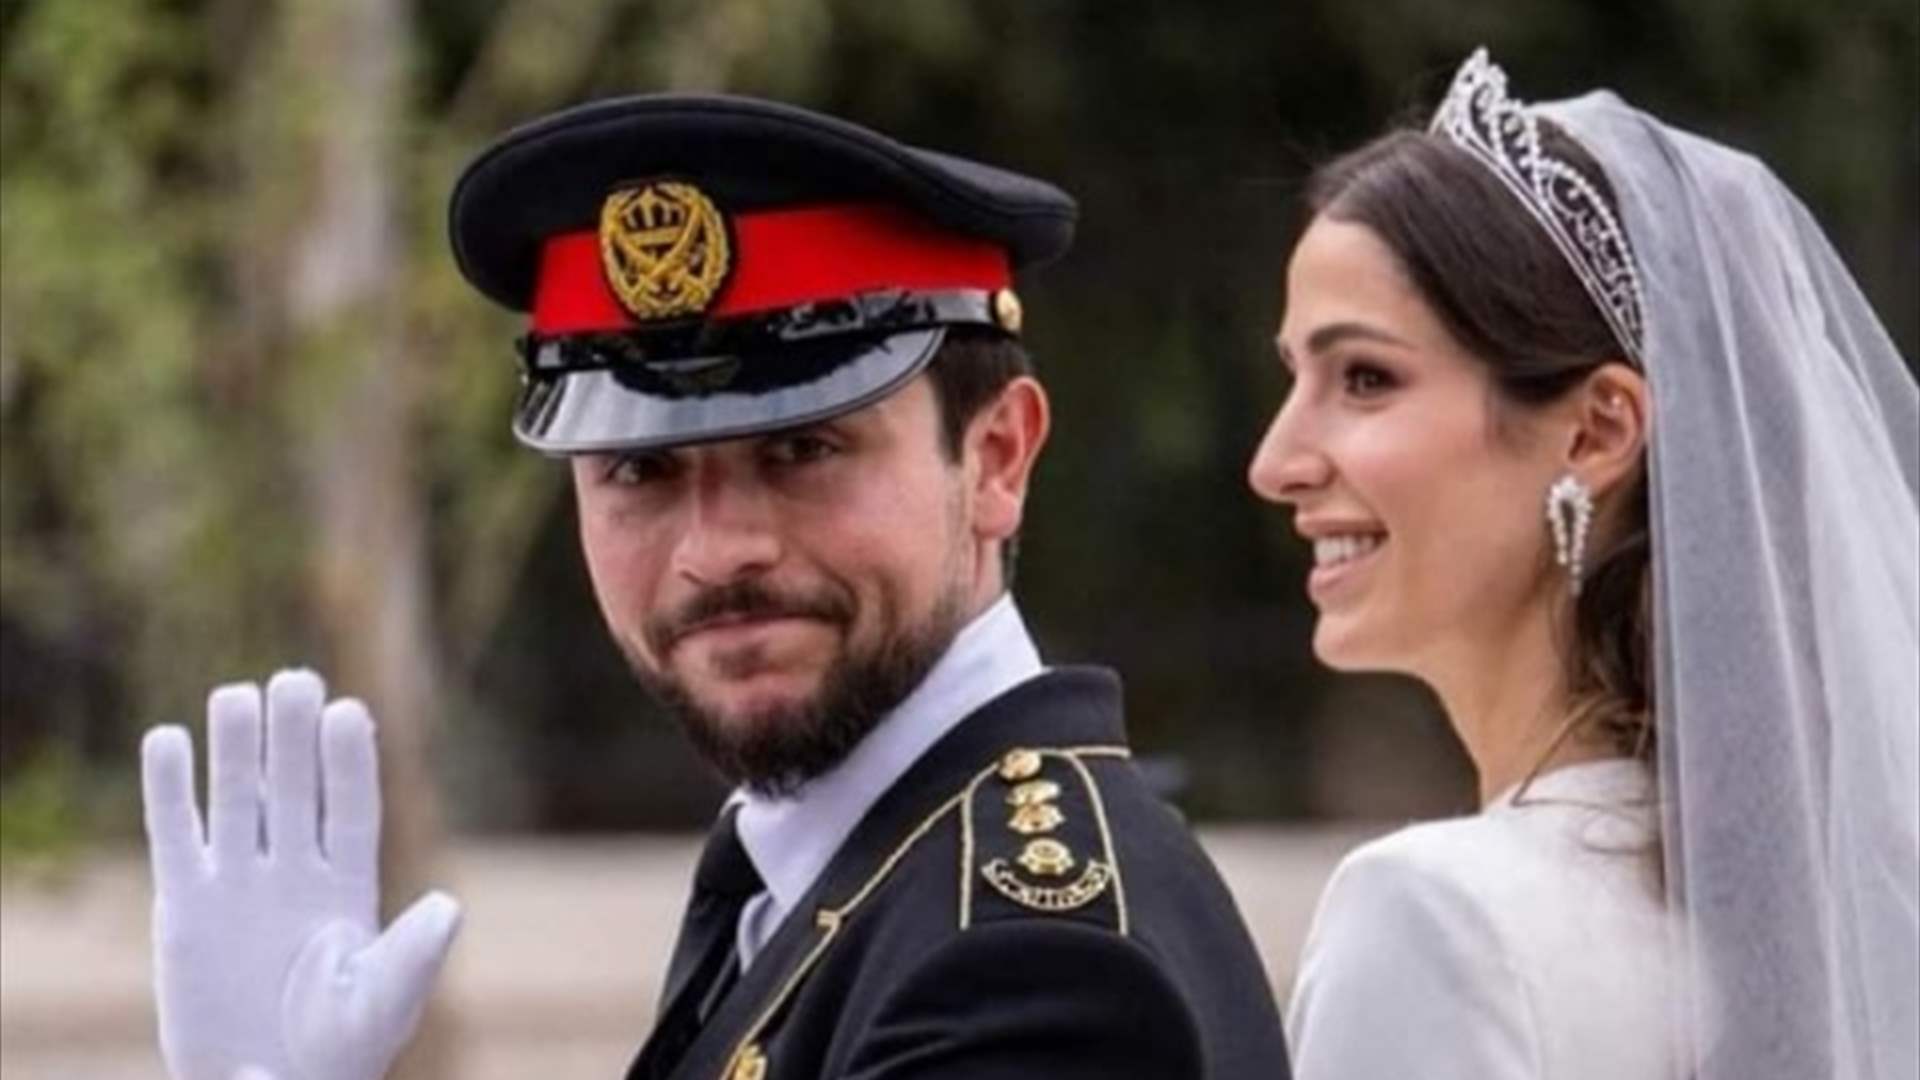 عبارة باللغة العربية زيّنت تاج الأميرة رجوة الحسين في زفافها... ما هي؟